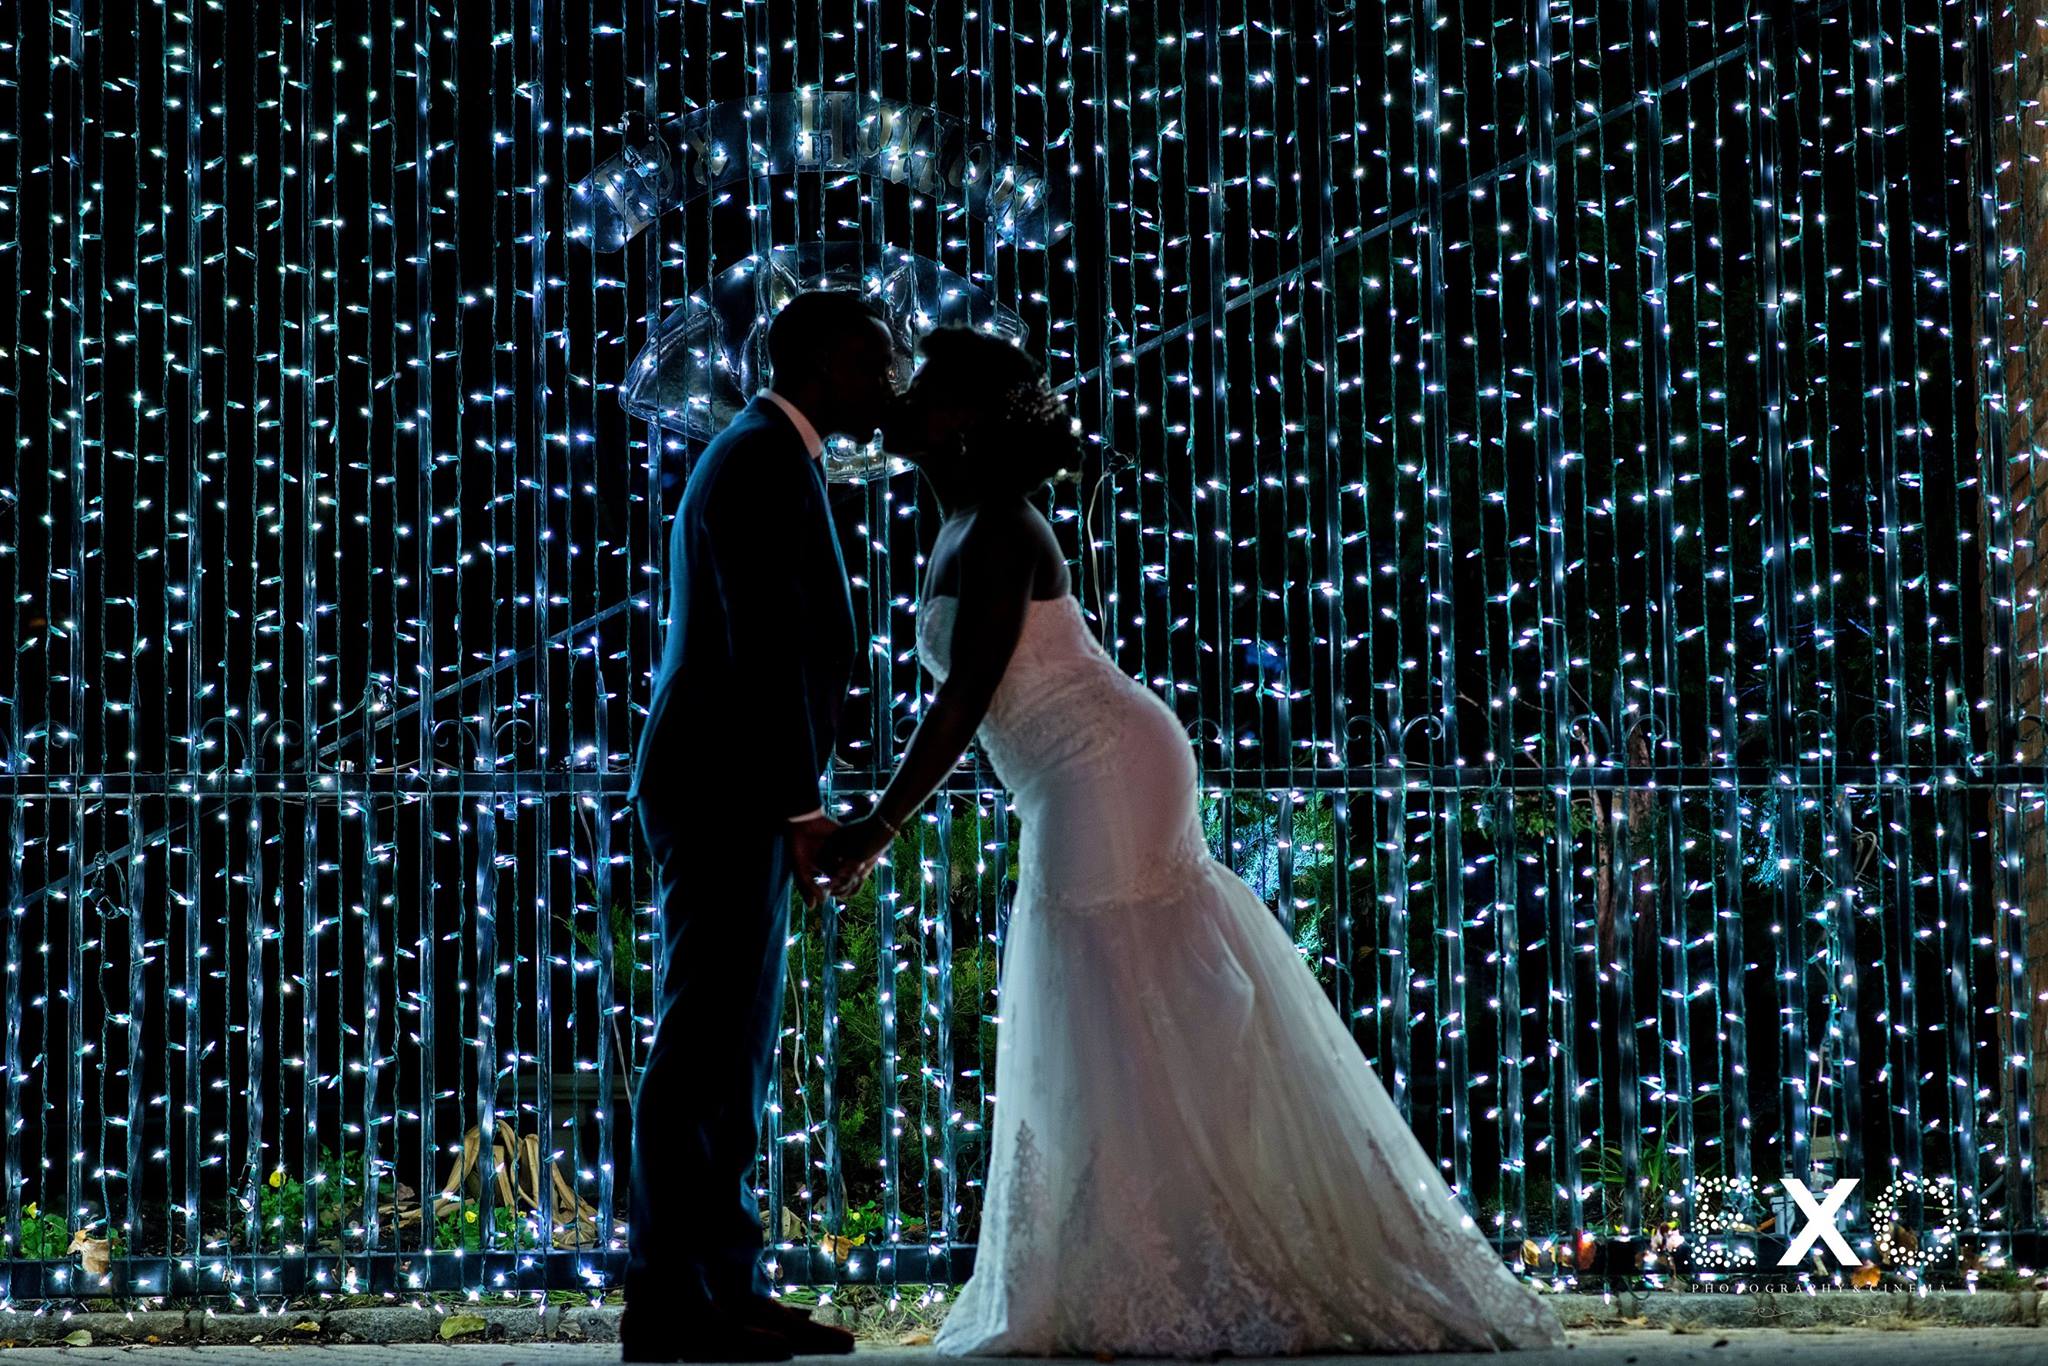 dark image of bride kissing groom near blue string lights at Fox Hollow wedding 